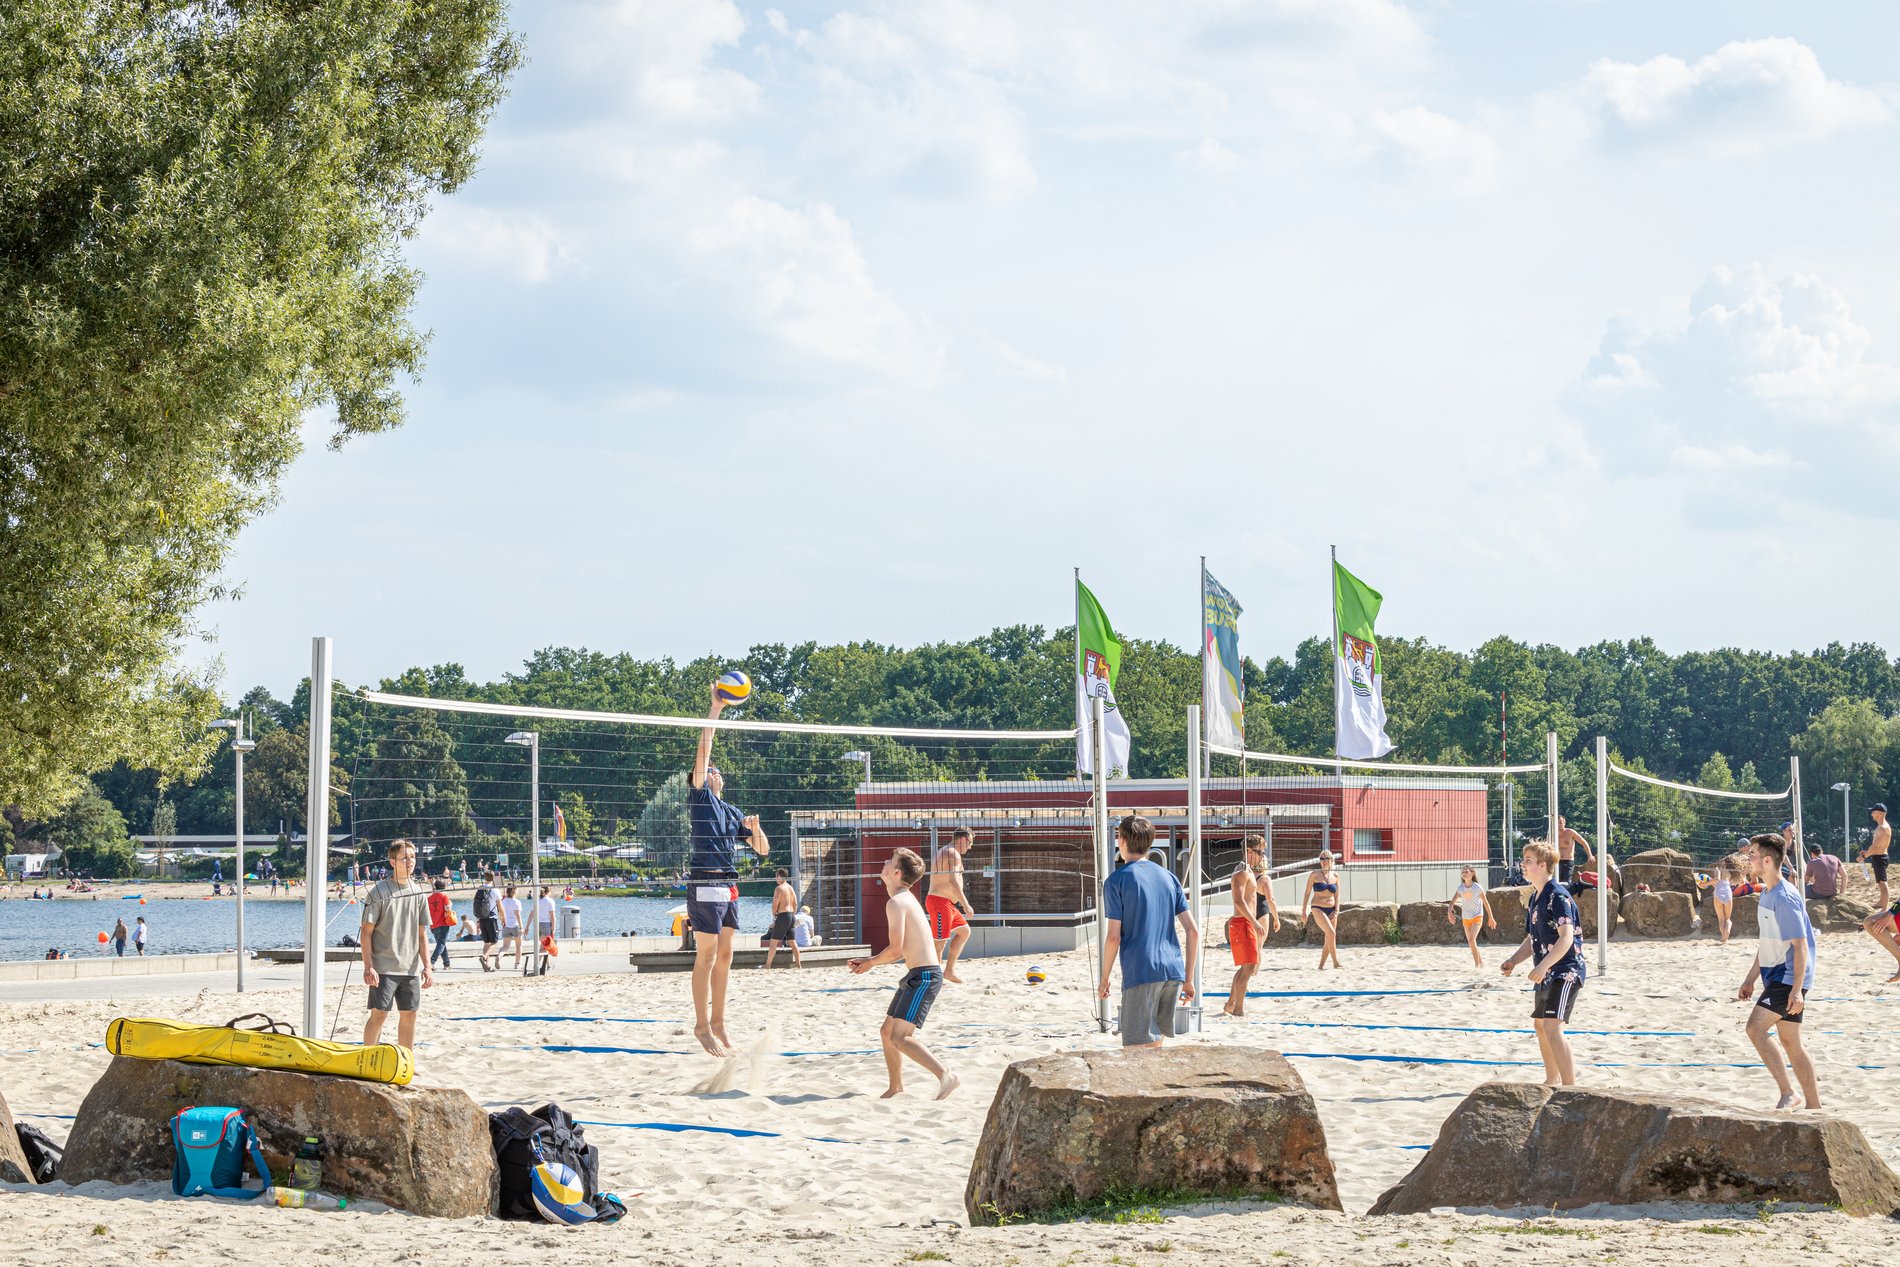 Man blickt auf eine Gruppe von Personen auf einem Beachvolleyballplatz an einem Strandabschnitt des Allersees